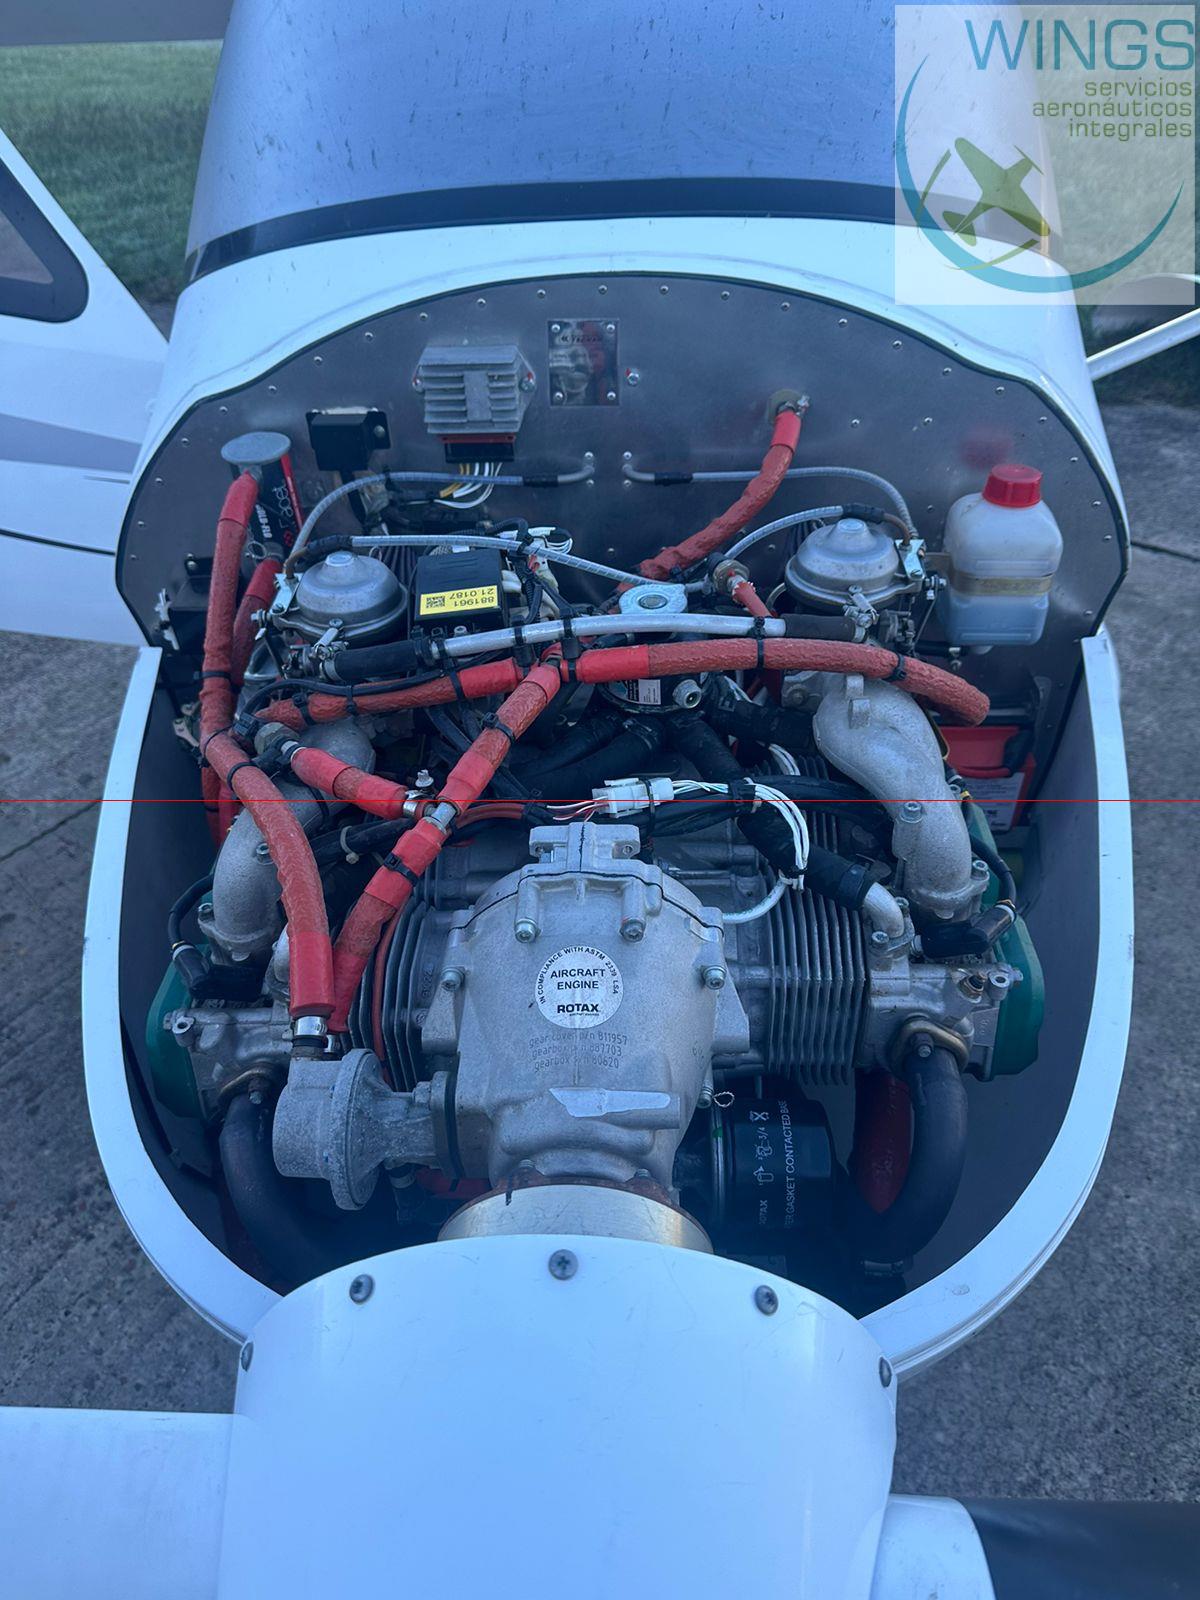 Motor Rotax 912 ULS, 100 HP